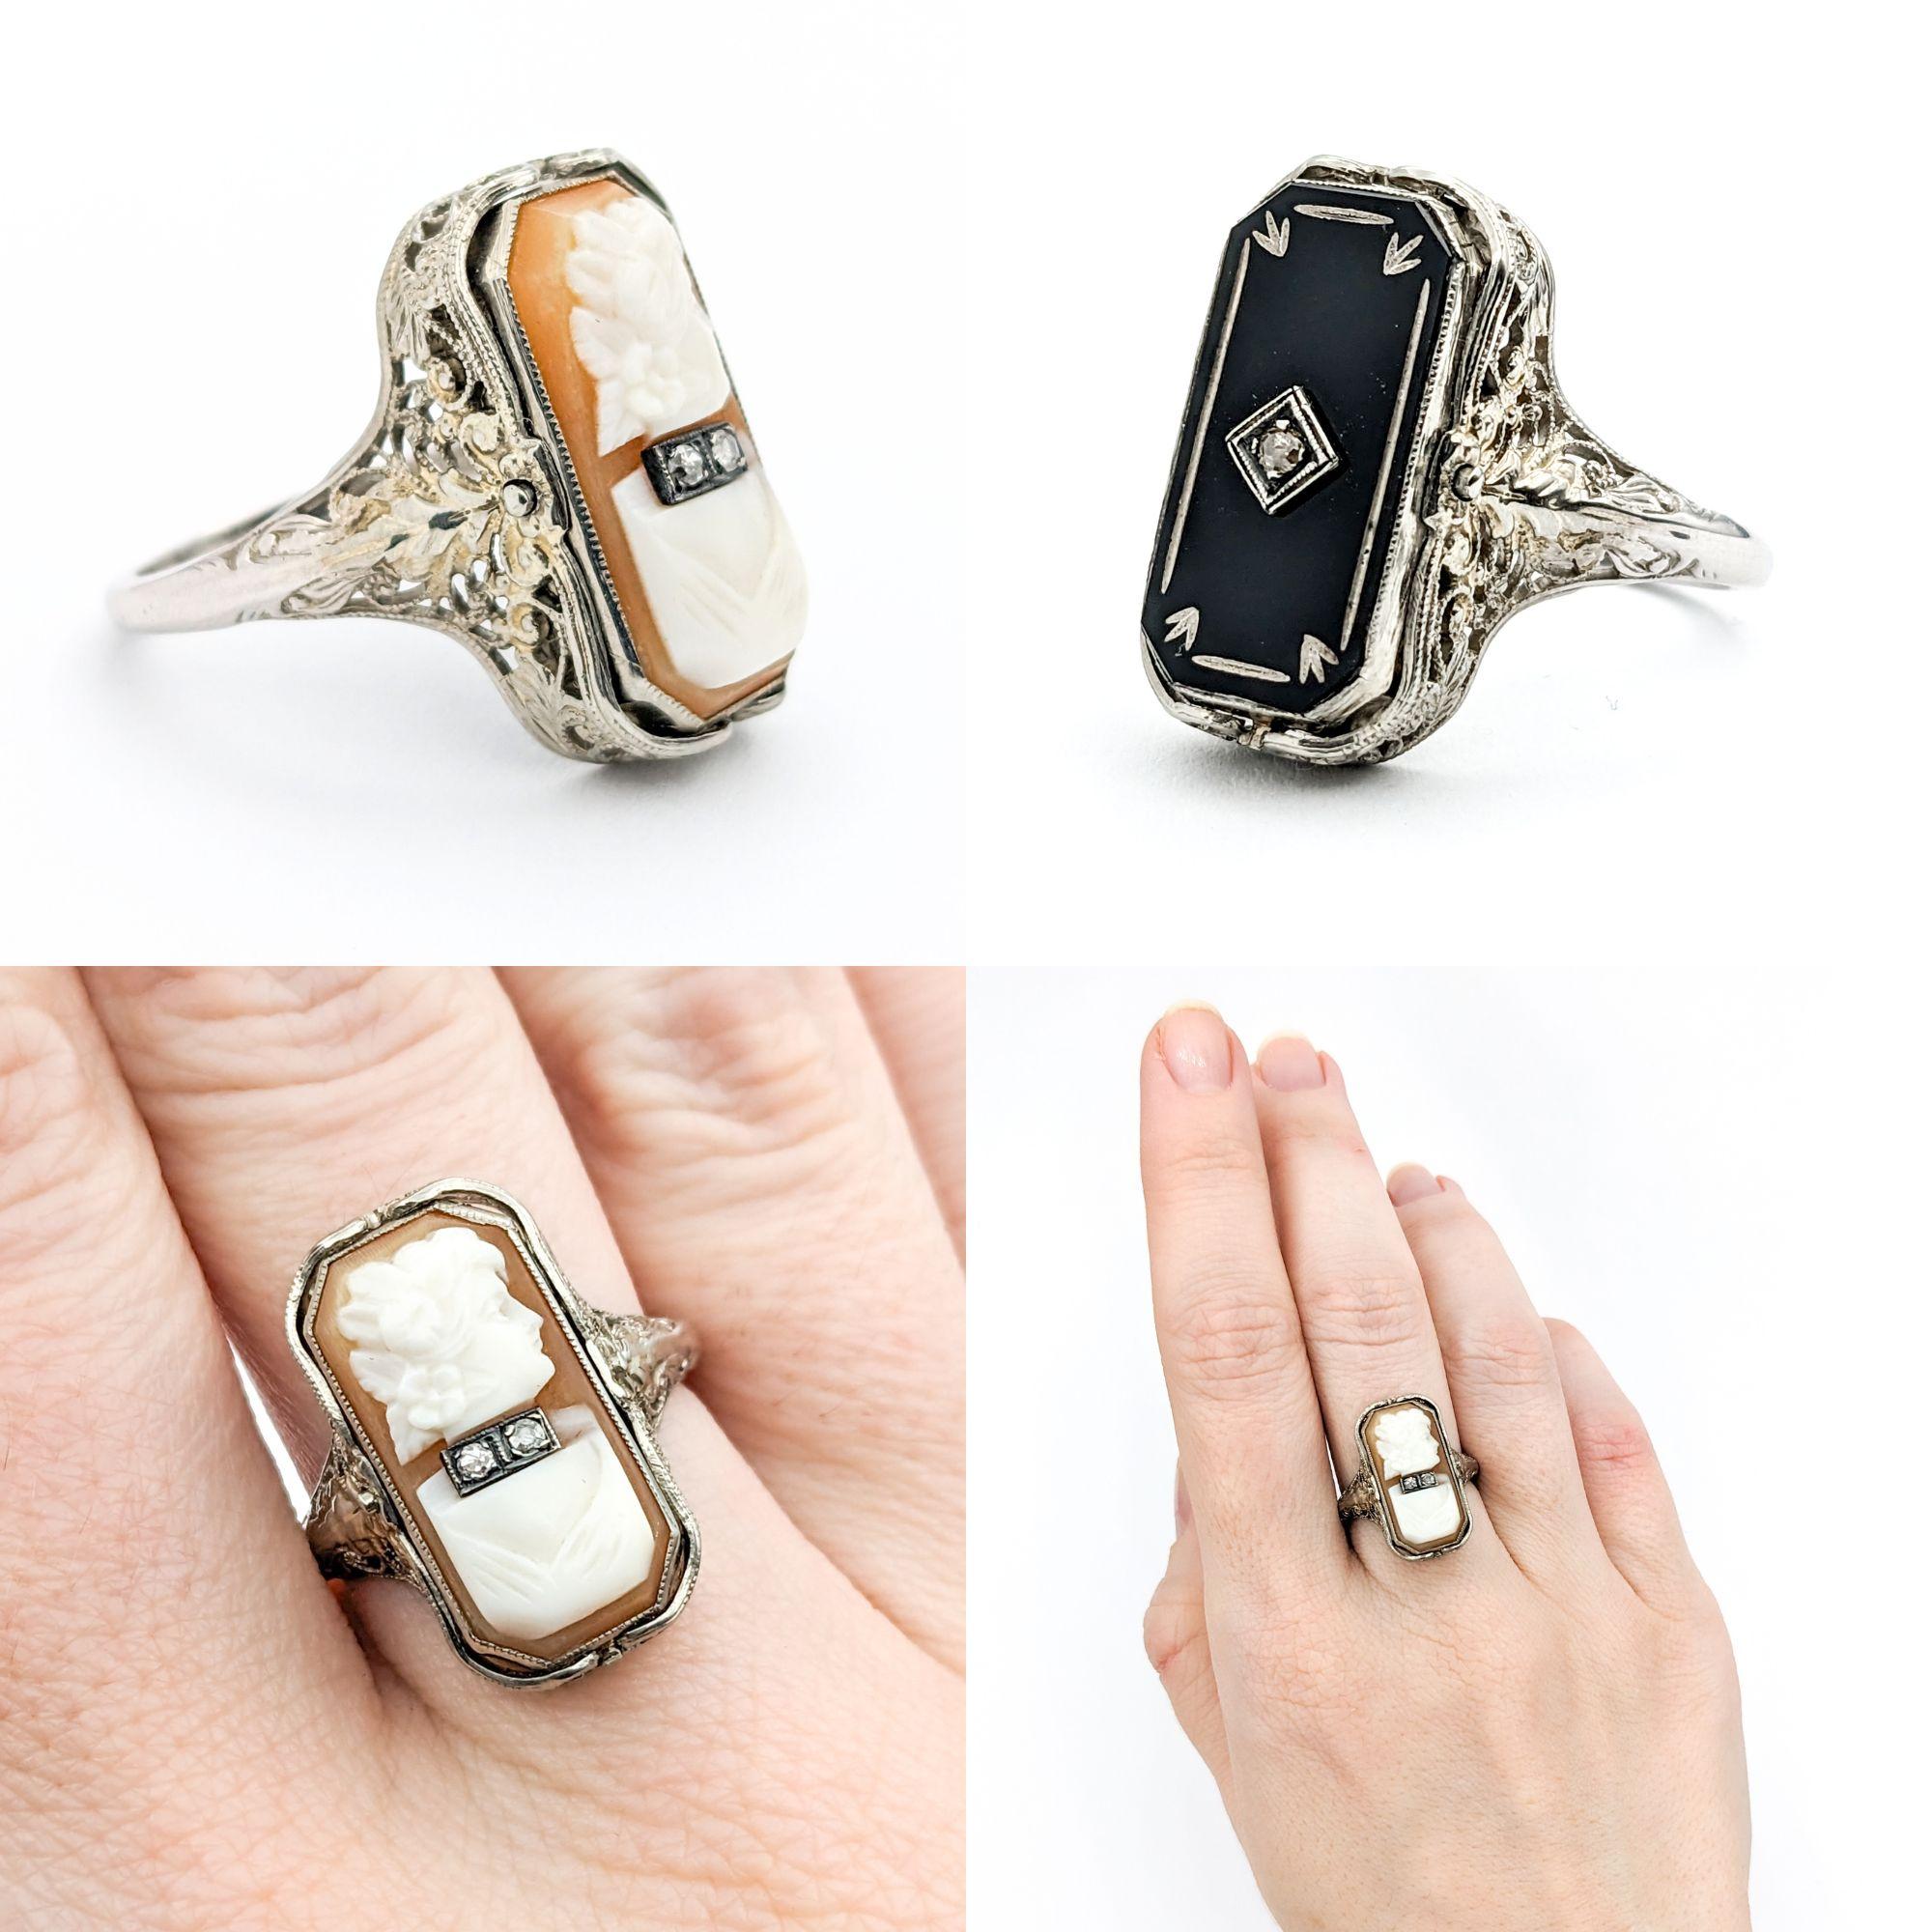 Antiker Cameo Habille Flip-Ring aus Weißgold mit Diamanten und Onyx

Wir präsentieren einen exquisiten antiken Klappring aus der Art-Déco-Ära, der kunstvoll aus 14 Karat Weißgold gefertigt ist. Dieser Ring ist eine atemberaubende Darstellung des